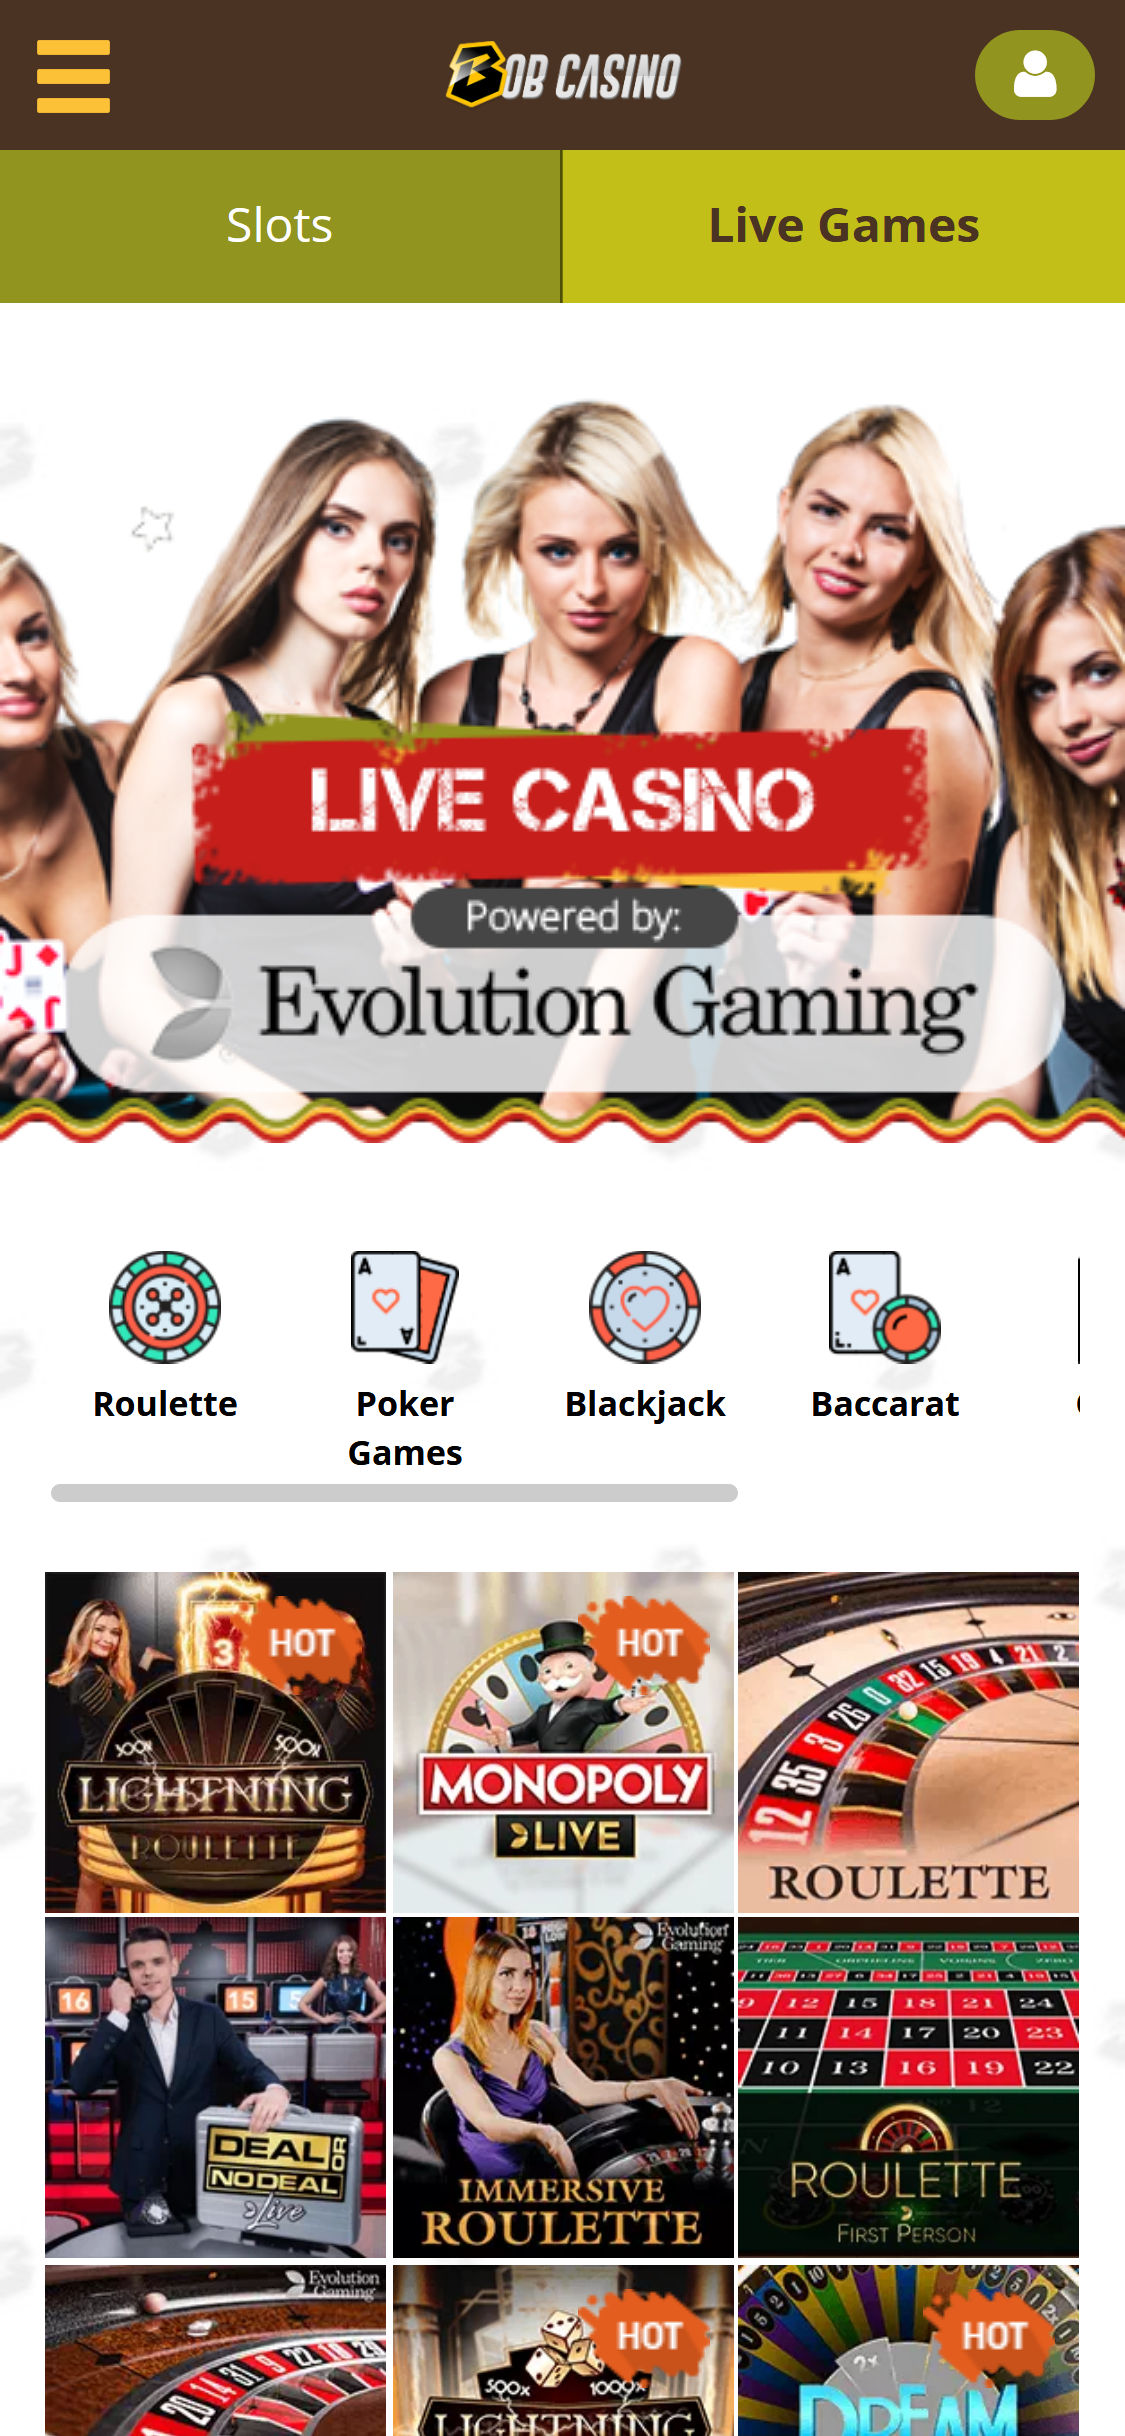 Bob Casino Mobile Live Dealer Games Review